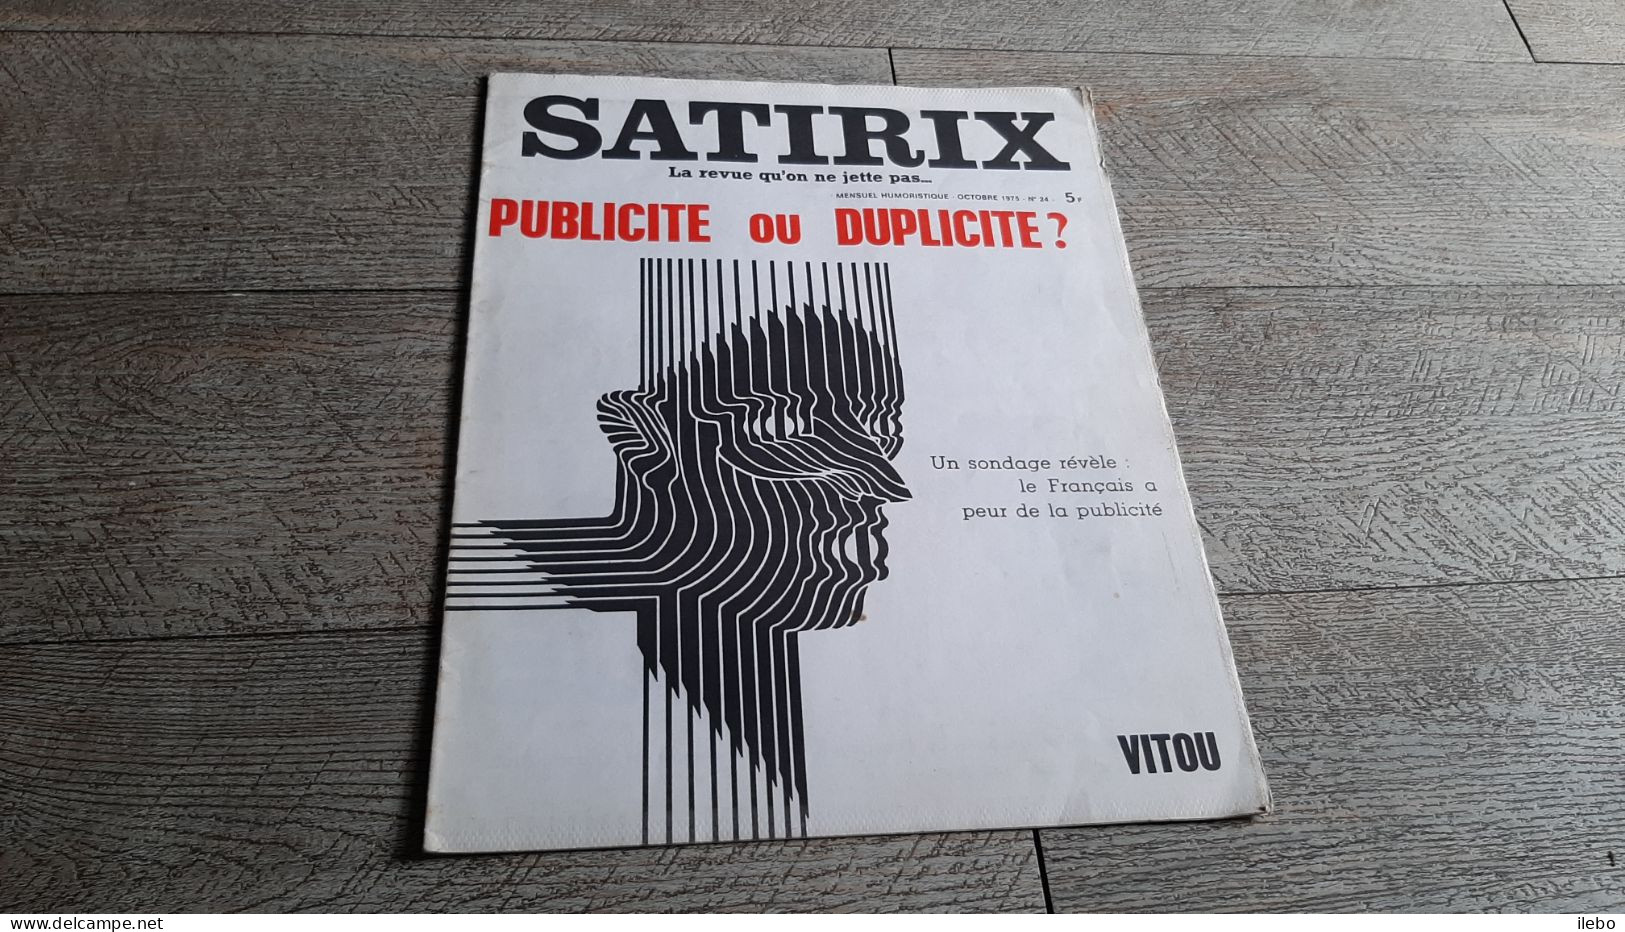 Revue Satirix 1973 Publicité Ou Duplicité Vitou   Satirique Caricature Politique N°24 - Humour